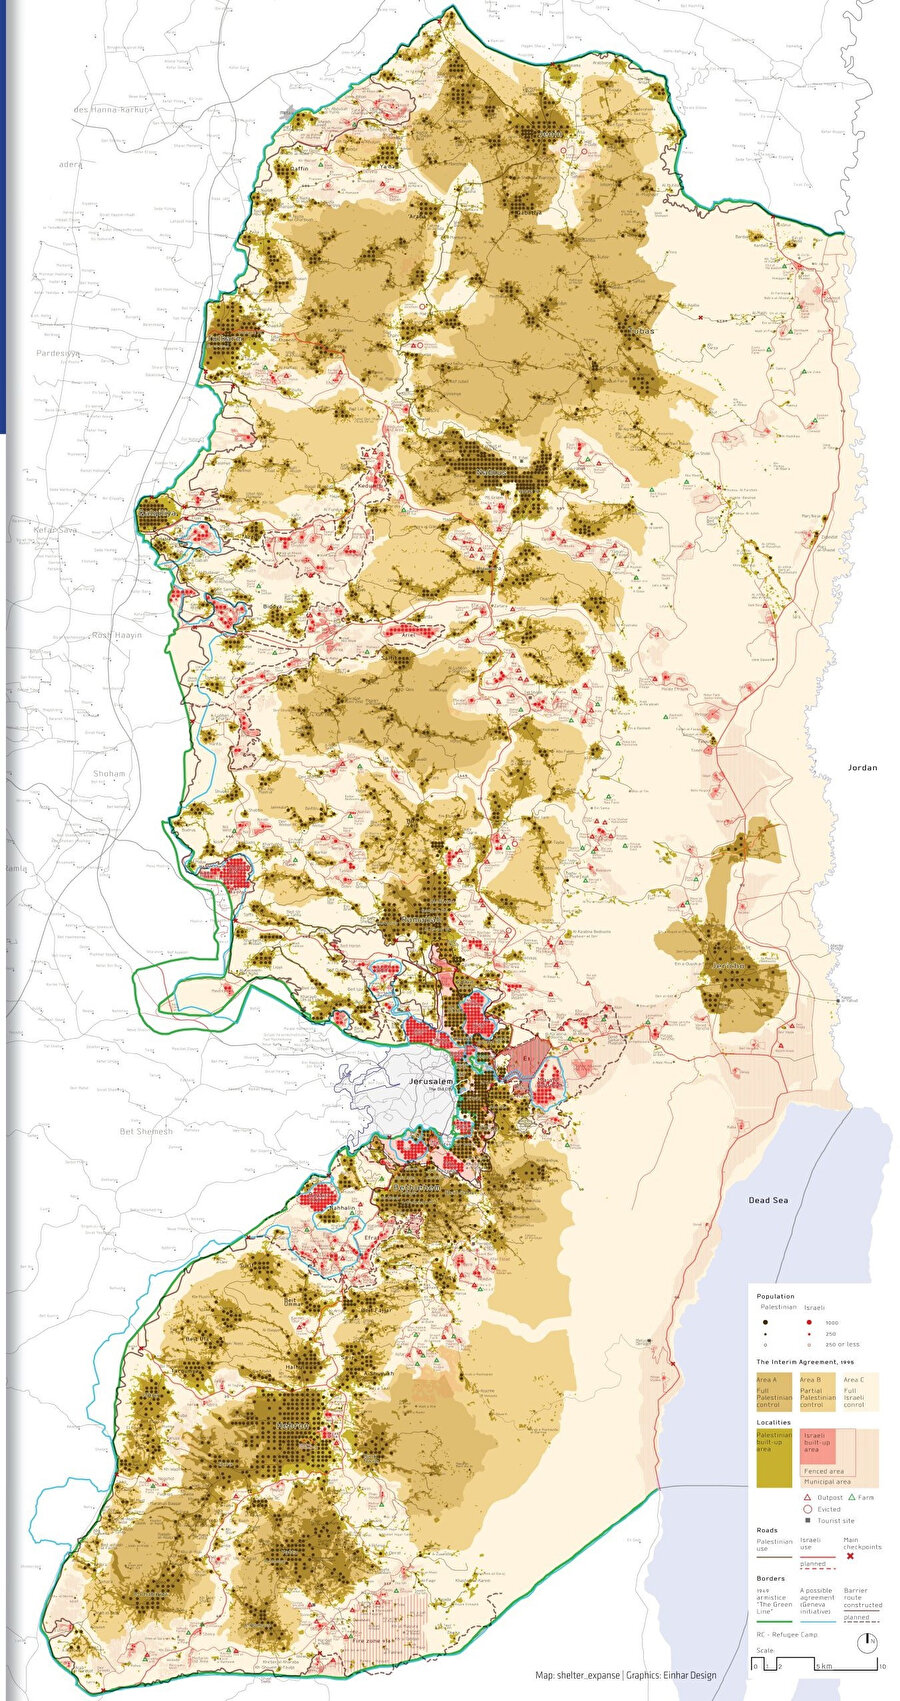 İsrailli sivil toplum kuruluşu Peace Now (Şimdi Barış) Hareketi'nin 2023 yılında hazırlamış olduğu Batı Şeria'daki yerleşimleri gösteren harita. (Kahverengi alanlarda bulunan her kırmızı nokta, o bölgedeki İsrail nüfusunu göstermekte.)